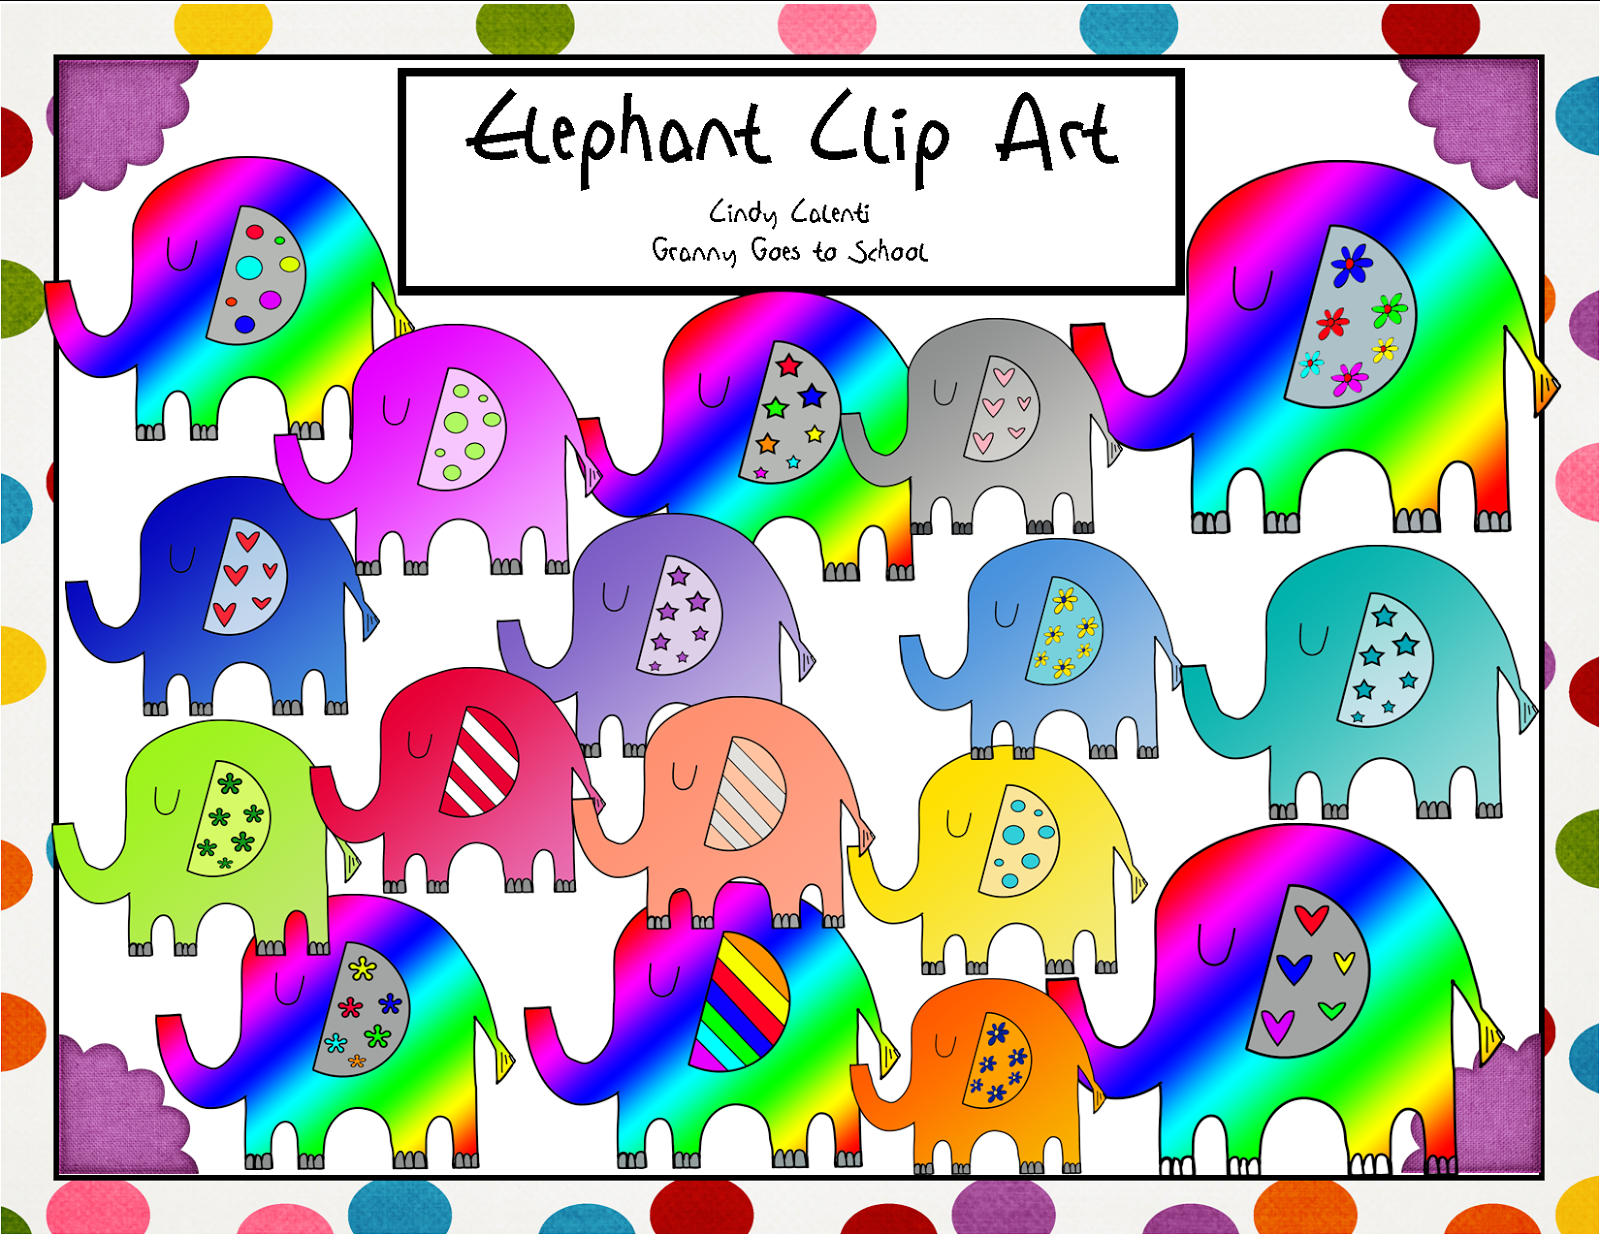 http://www.teacherspayteachers.com/Product/Colorful-Elephant-Clip-Art-24-Images-1414402